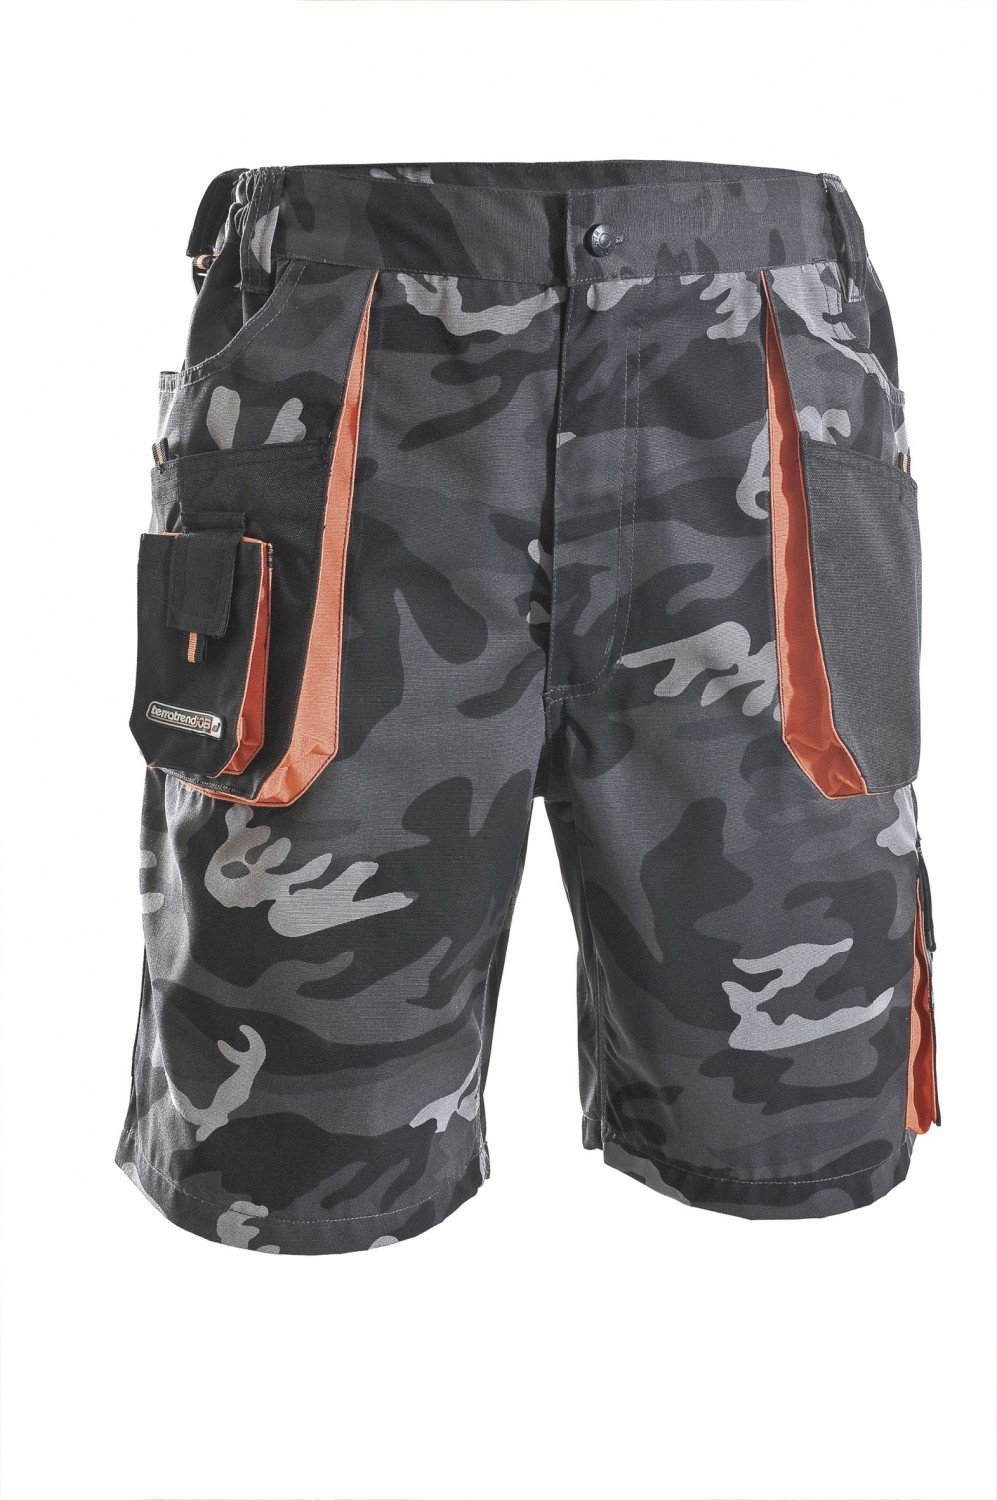 Herren Shorts camouflage/schwarz/orange Größe 48